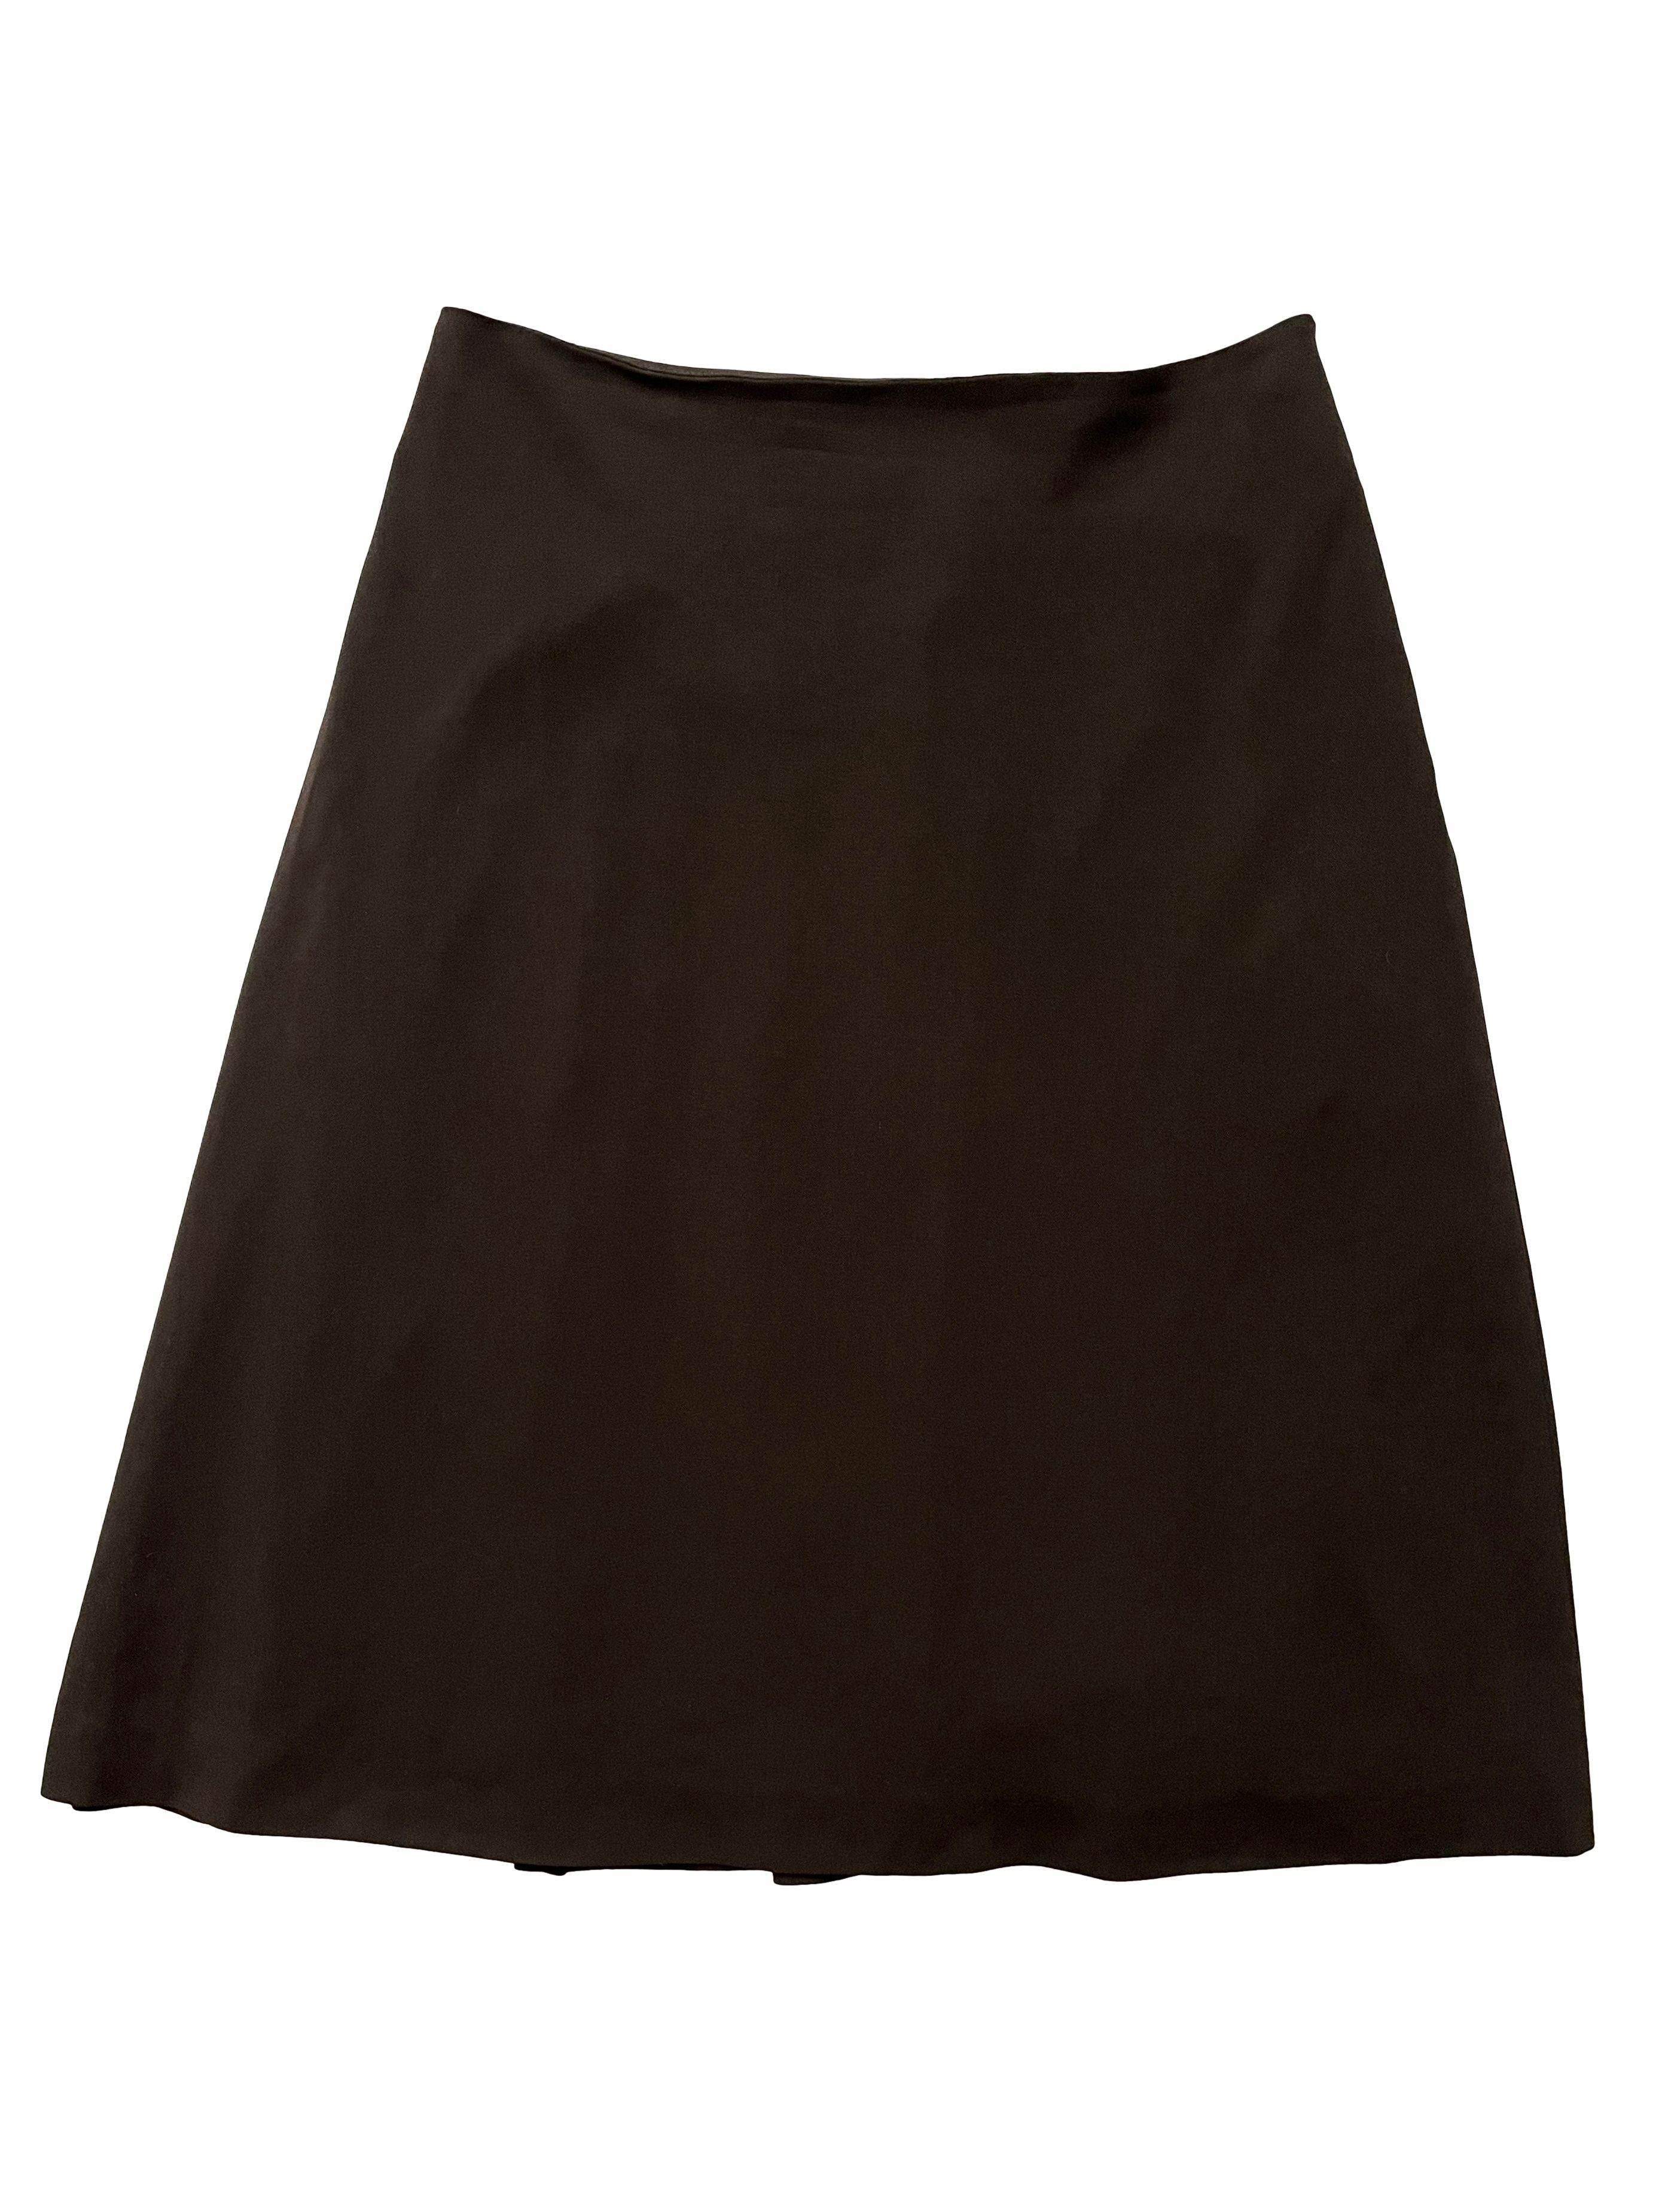 Celine ⚡️QUICK SALE⚡️Celine Phoebe Philo Brown A-Line Skirt Pleats Size 28" / US 6 / IT 42 - 1 Preview